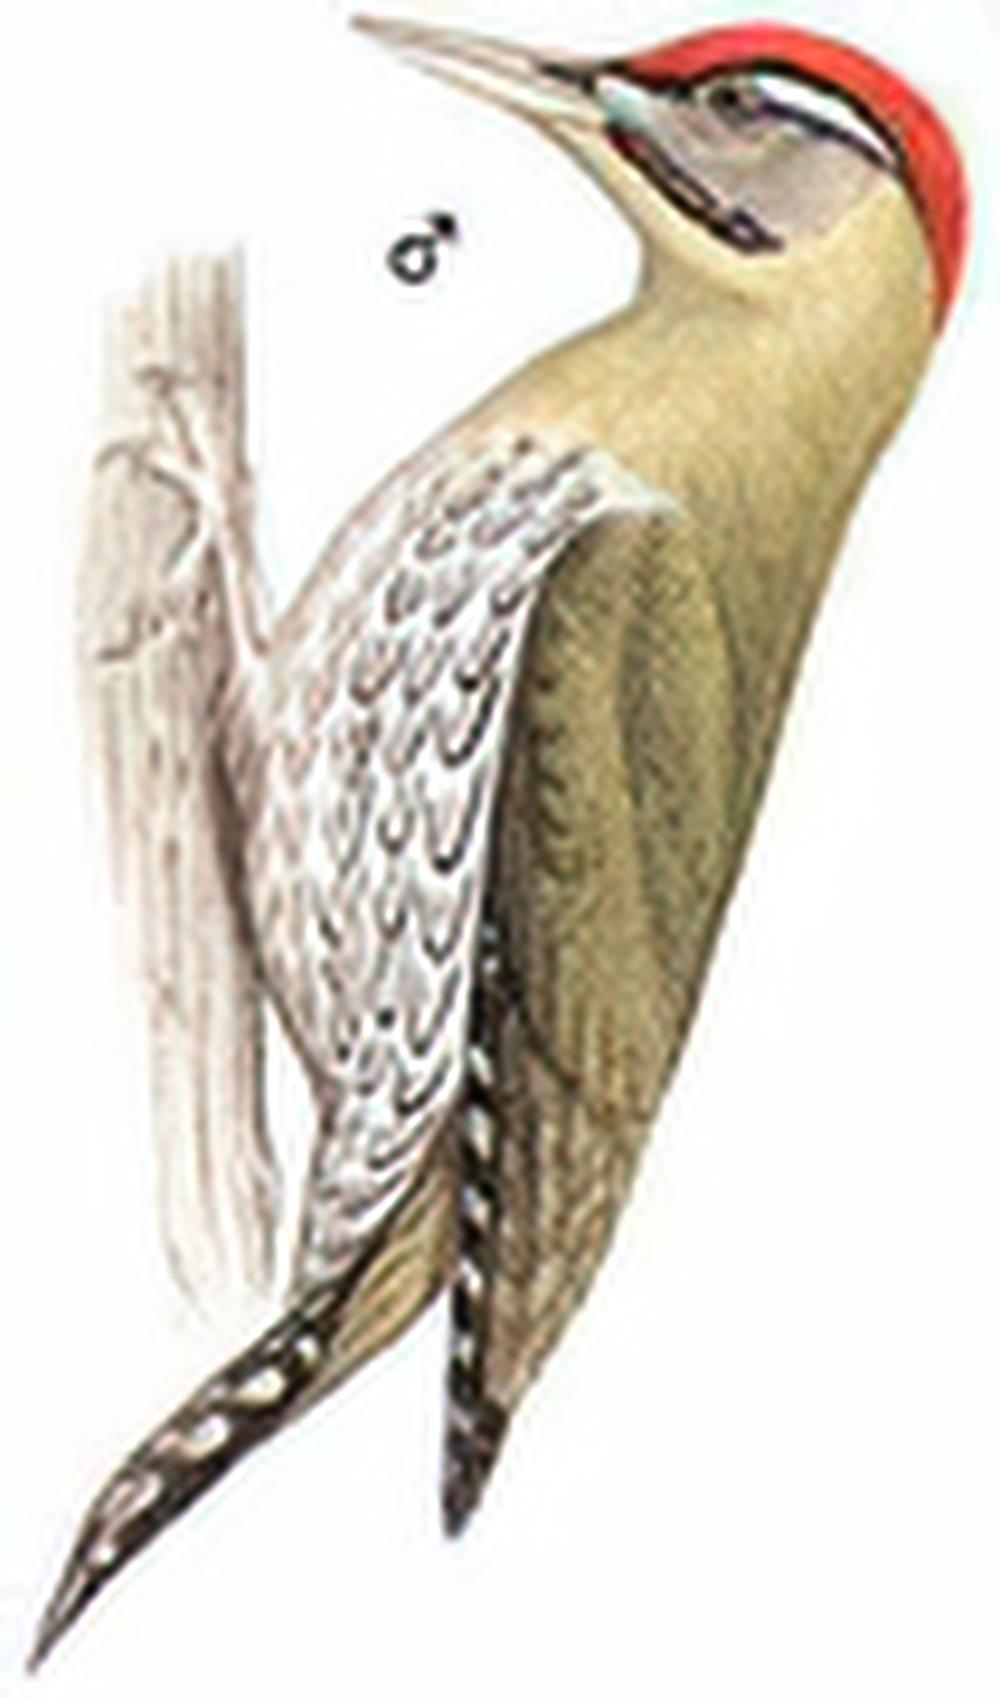 鳞腹绿啄木鸟